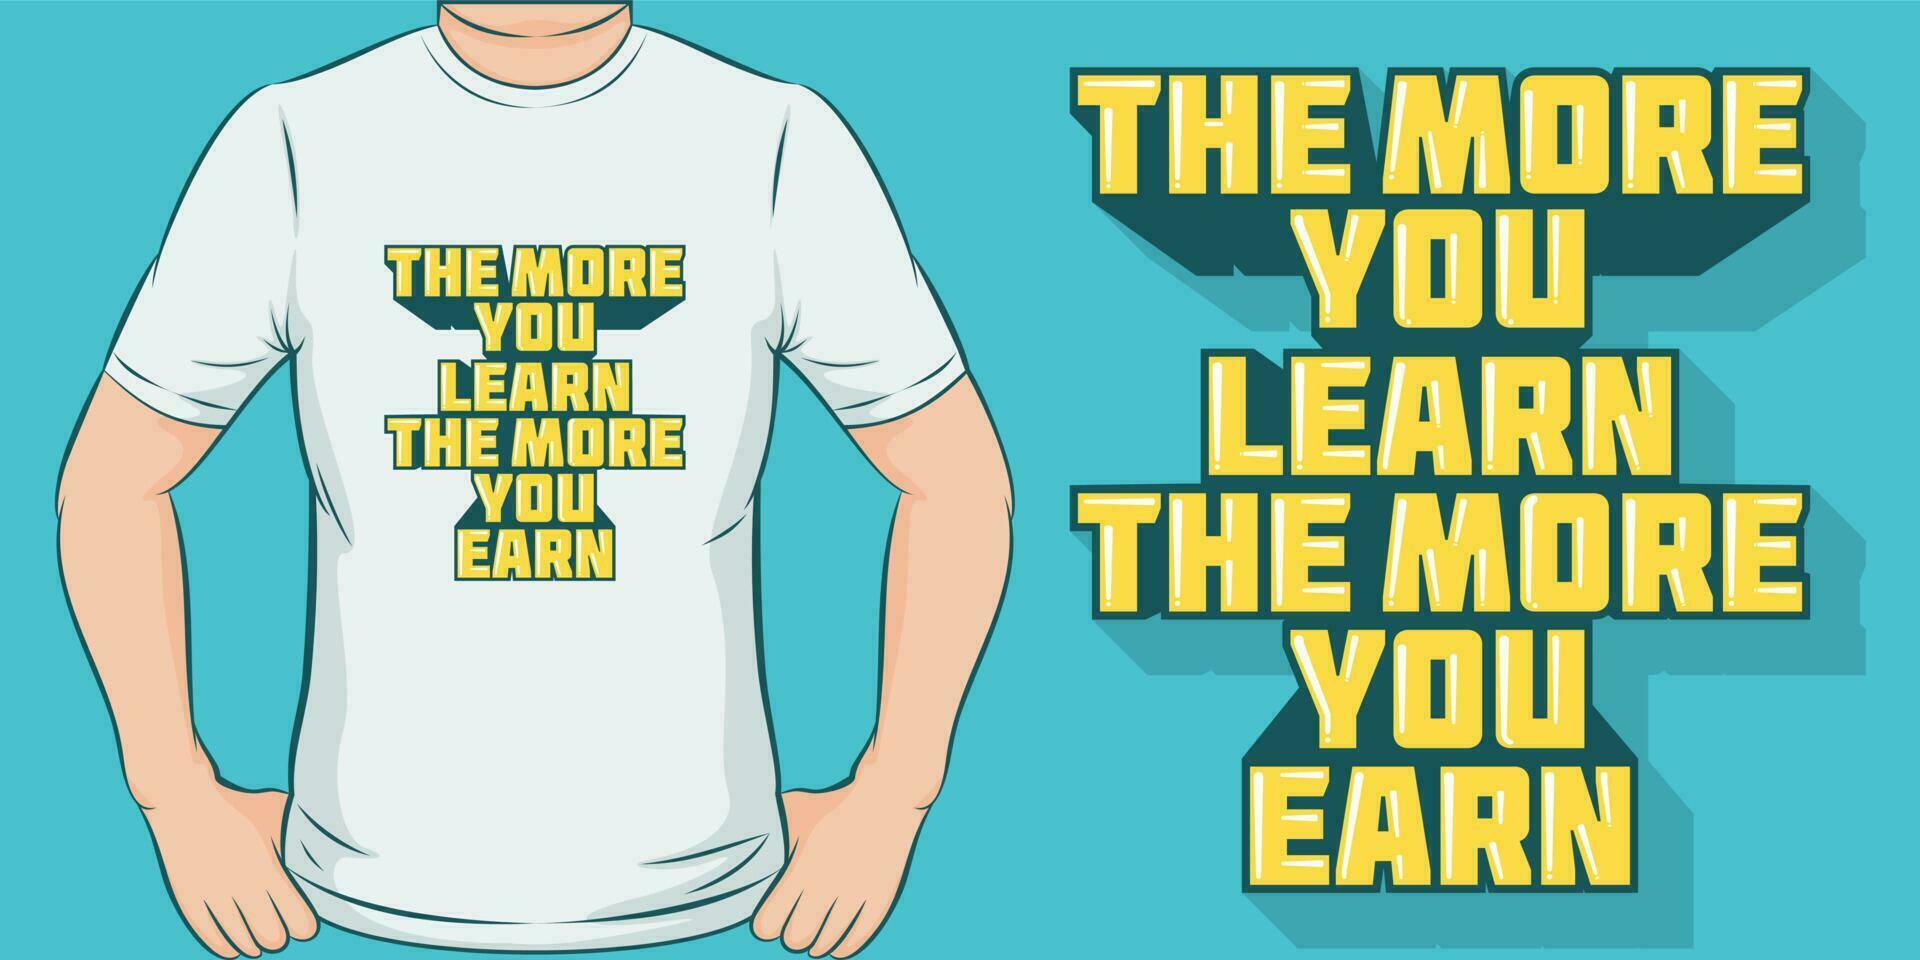 el más usted aprender, el más usted ganar, motivacional citar camiseta diseño. vector